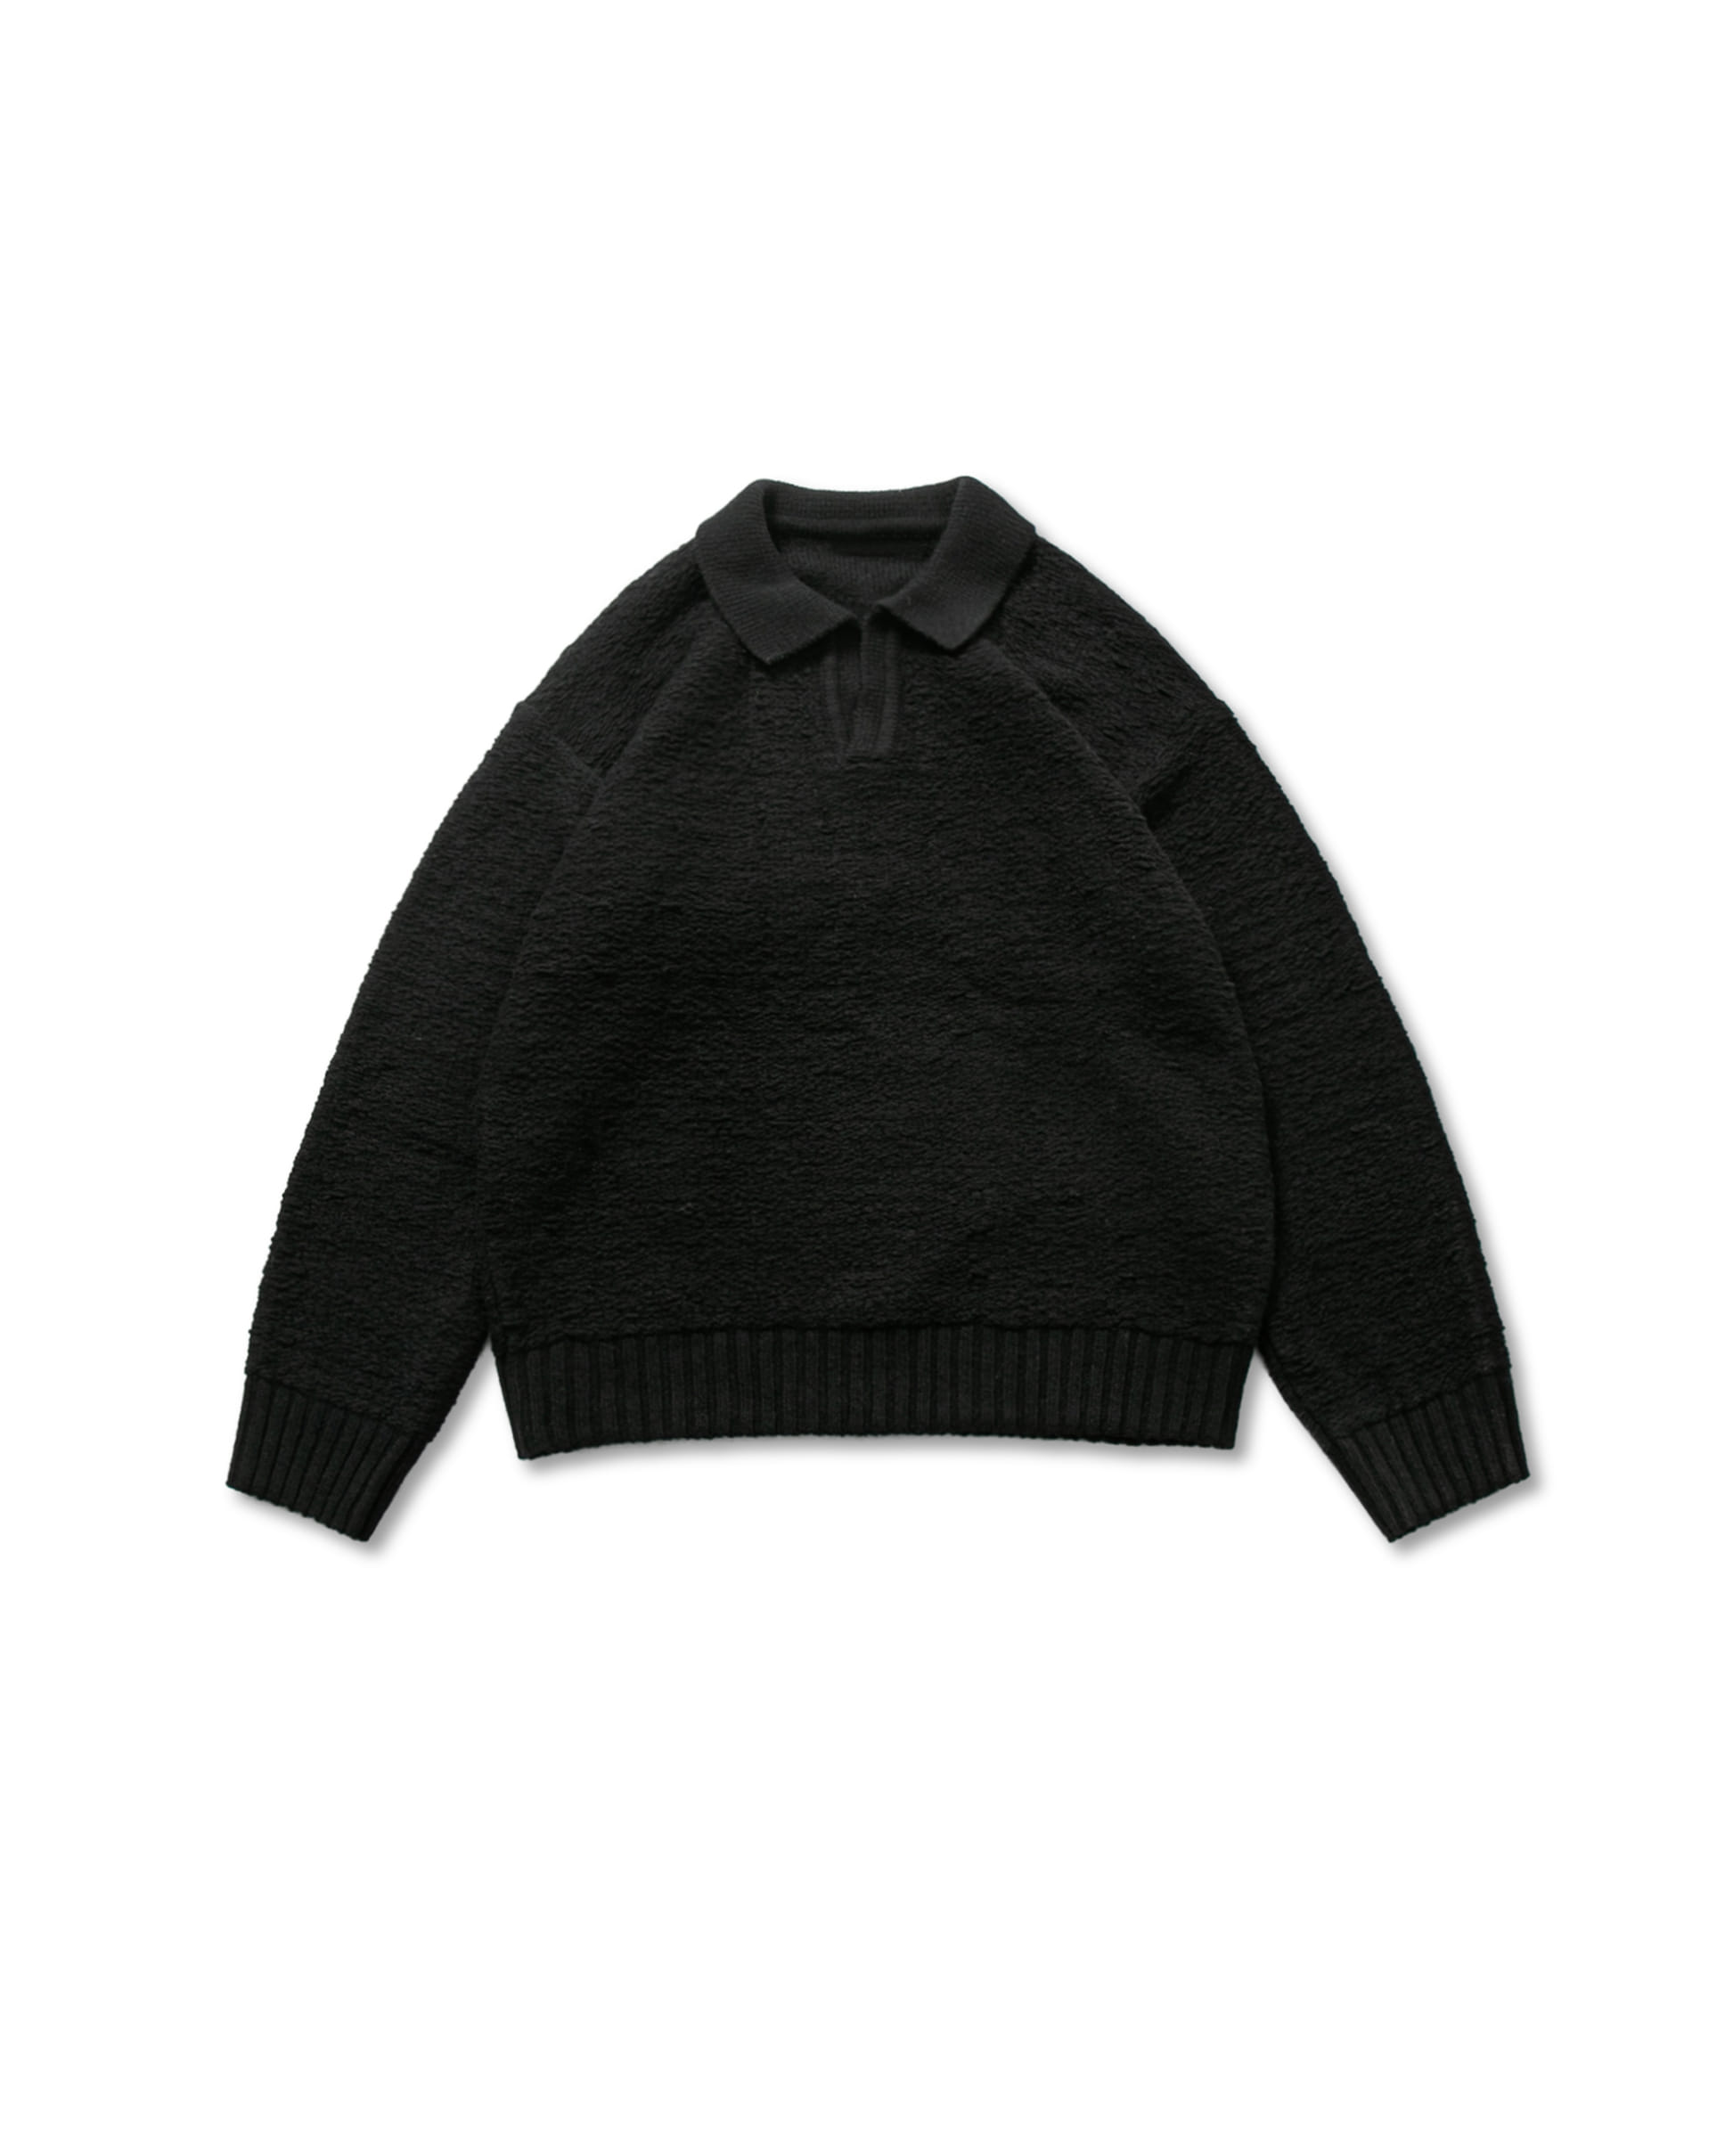 Blended Open Collar Knit - Black